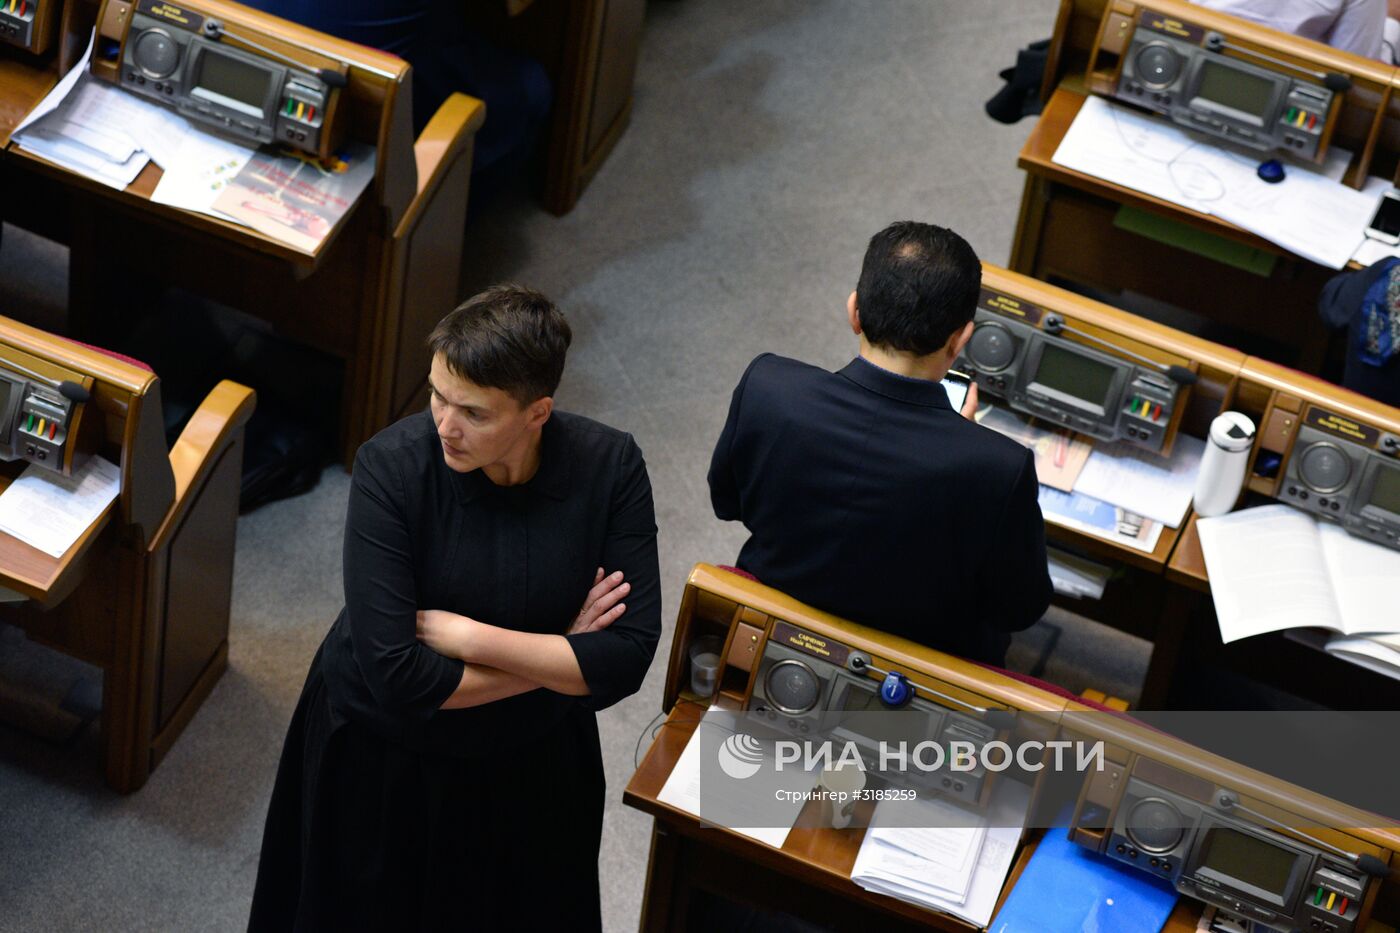 Открытие осенней сессии Верховной рады в Киеве